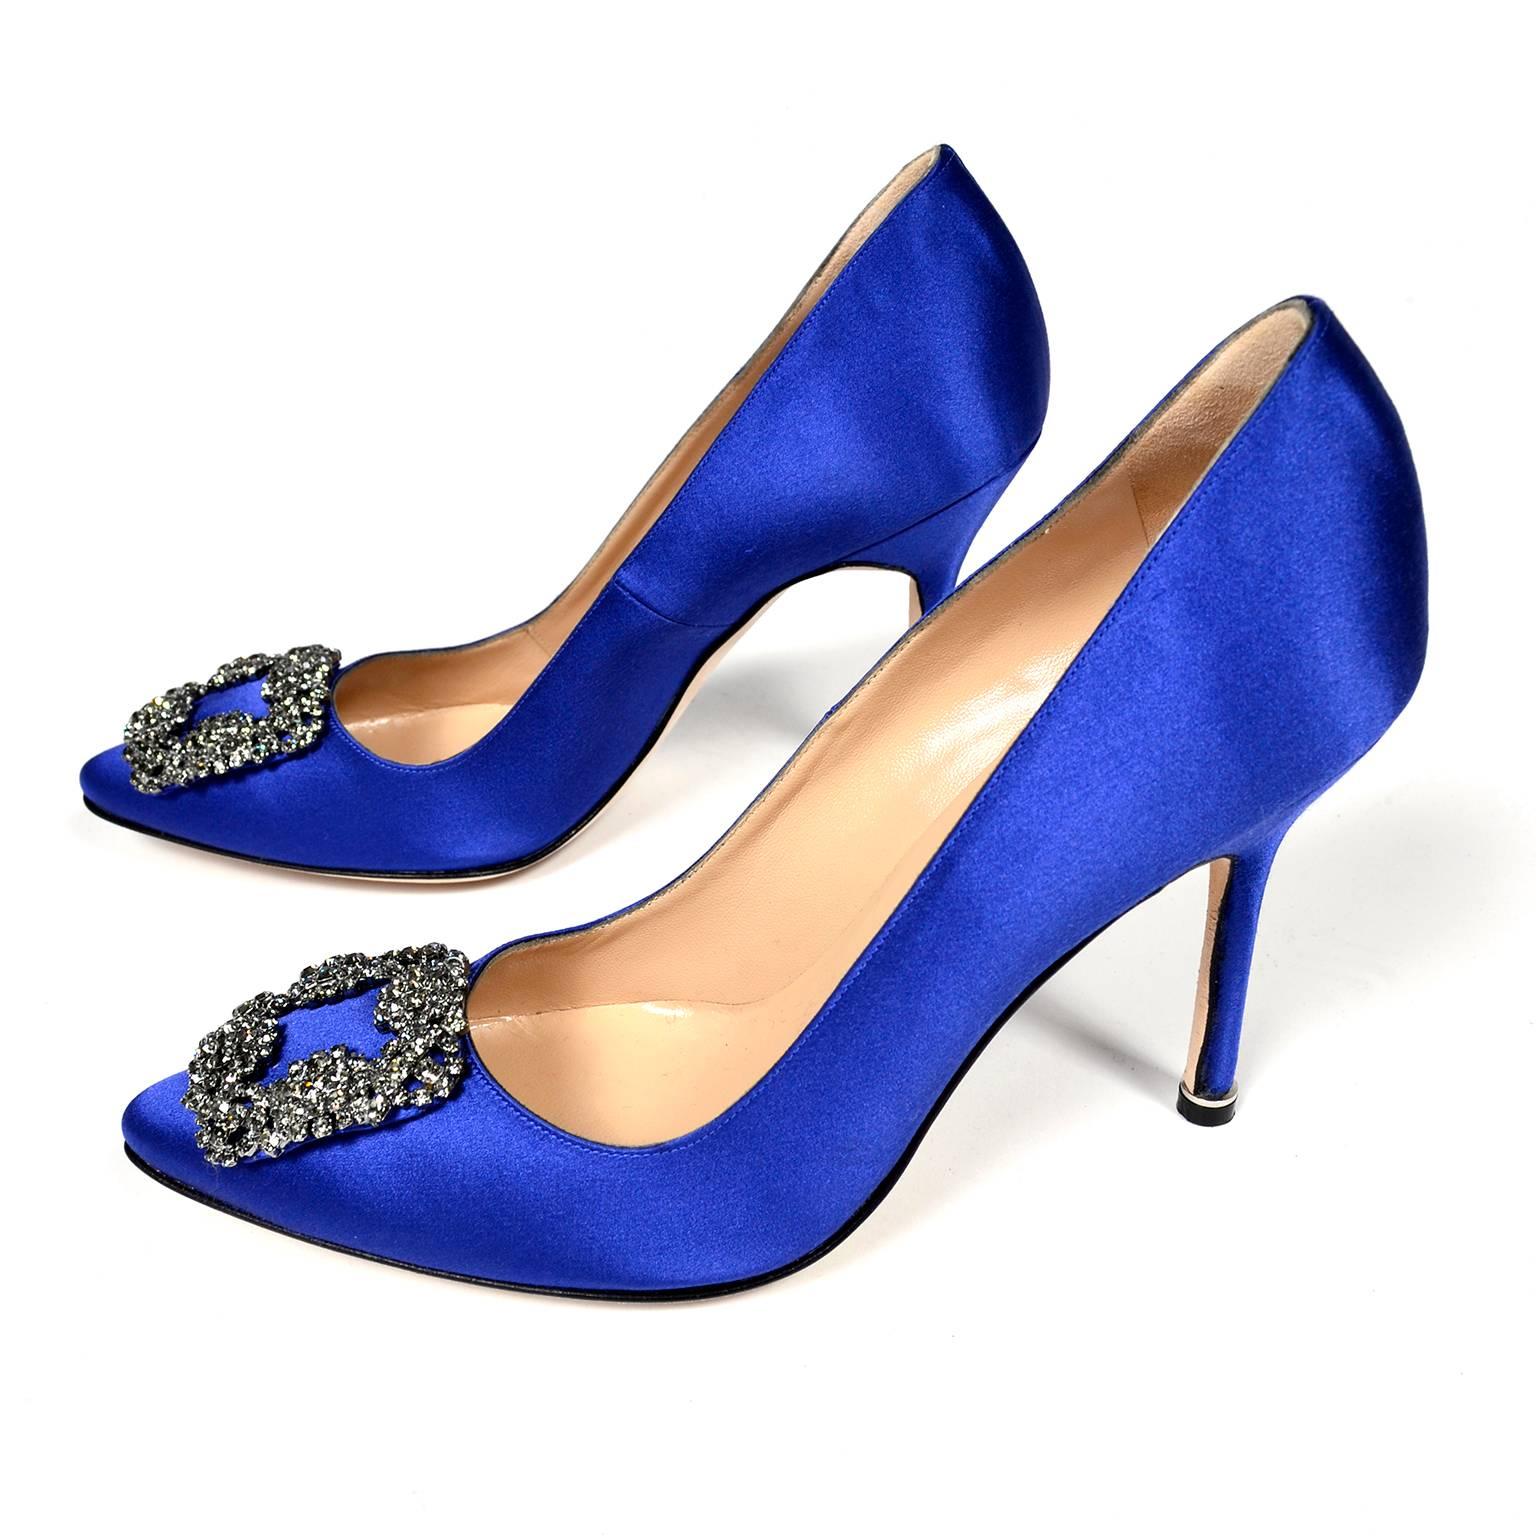 Beige New Manolo Blahnik Carrie Bradshaw Blue Satin Shoes Lanza Heels in box 37.5